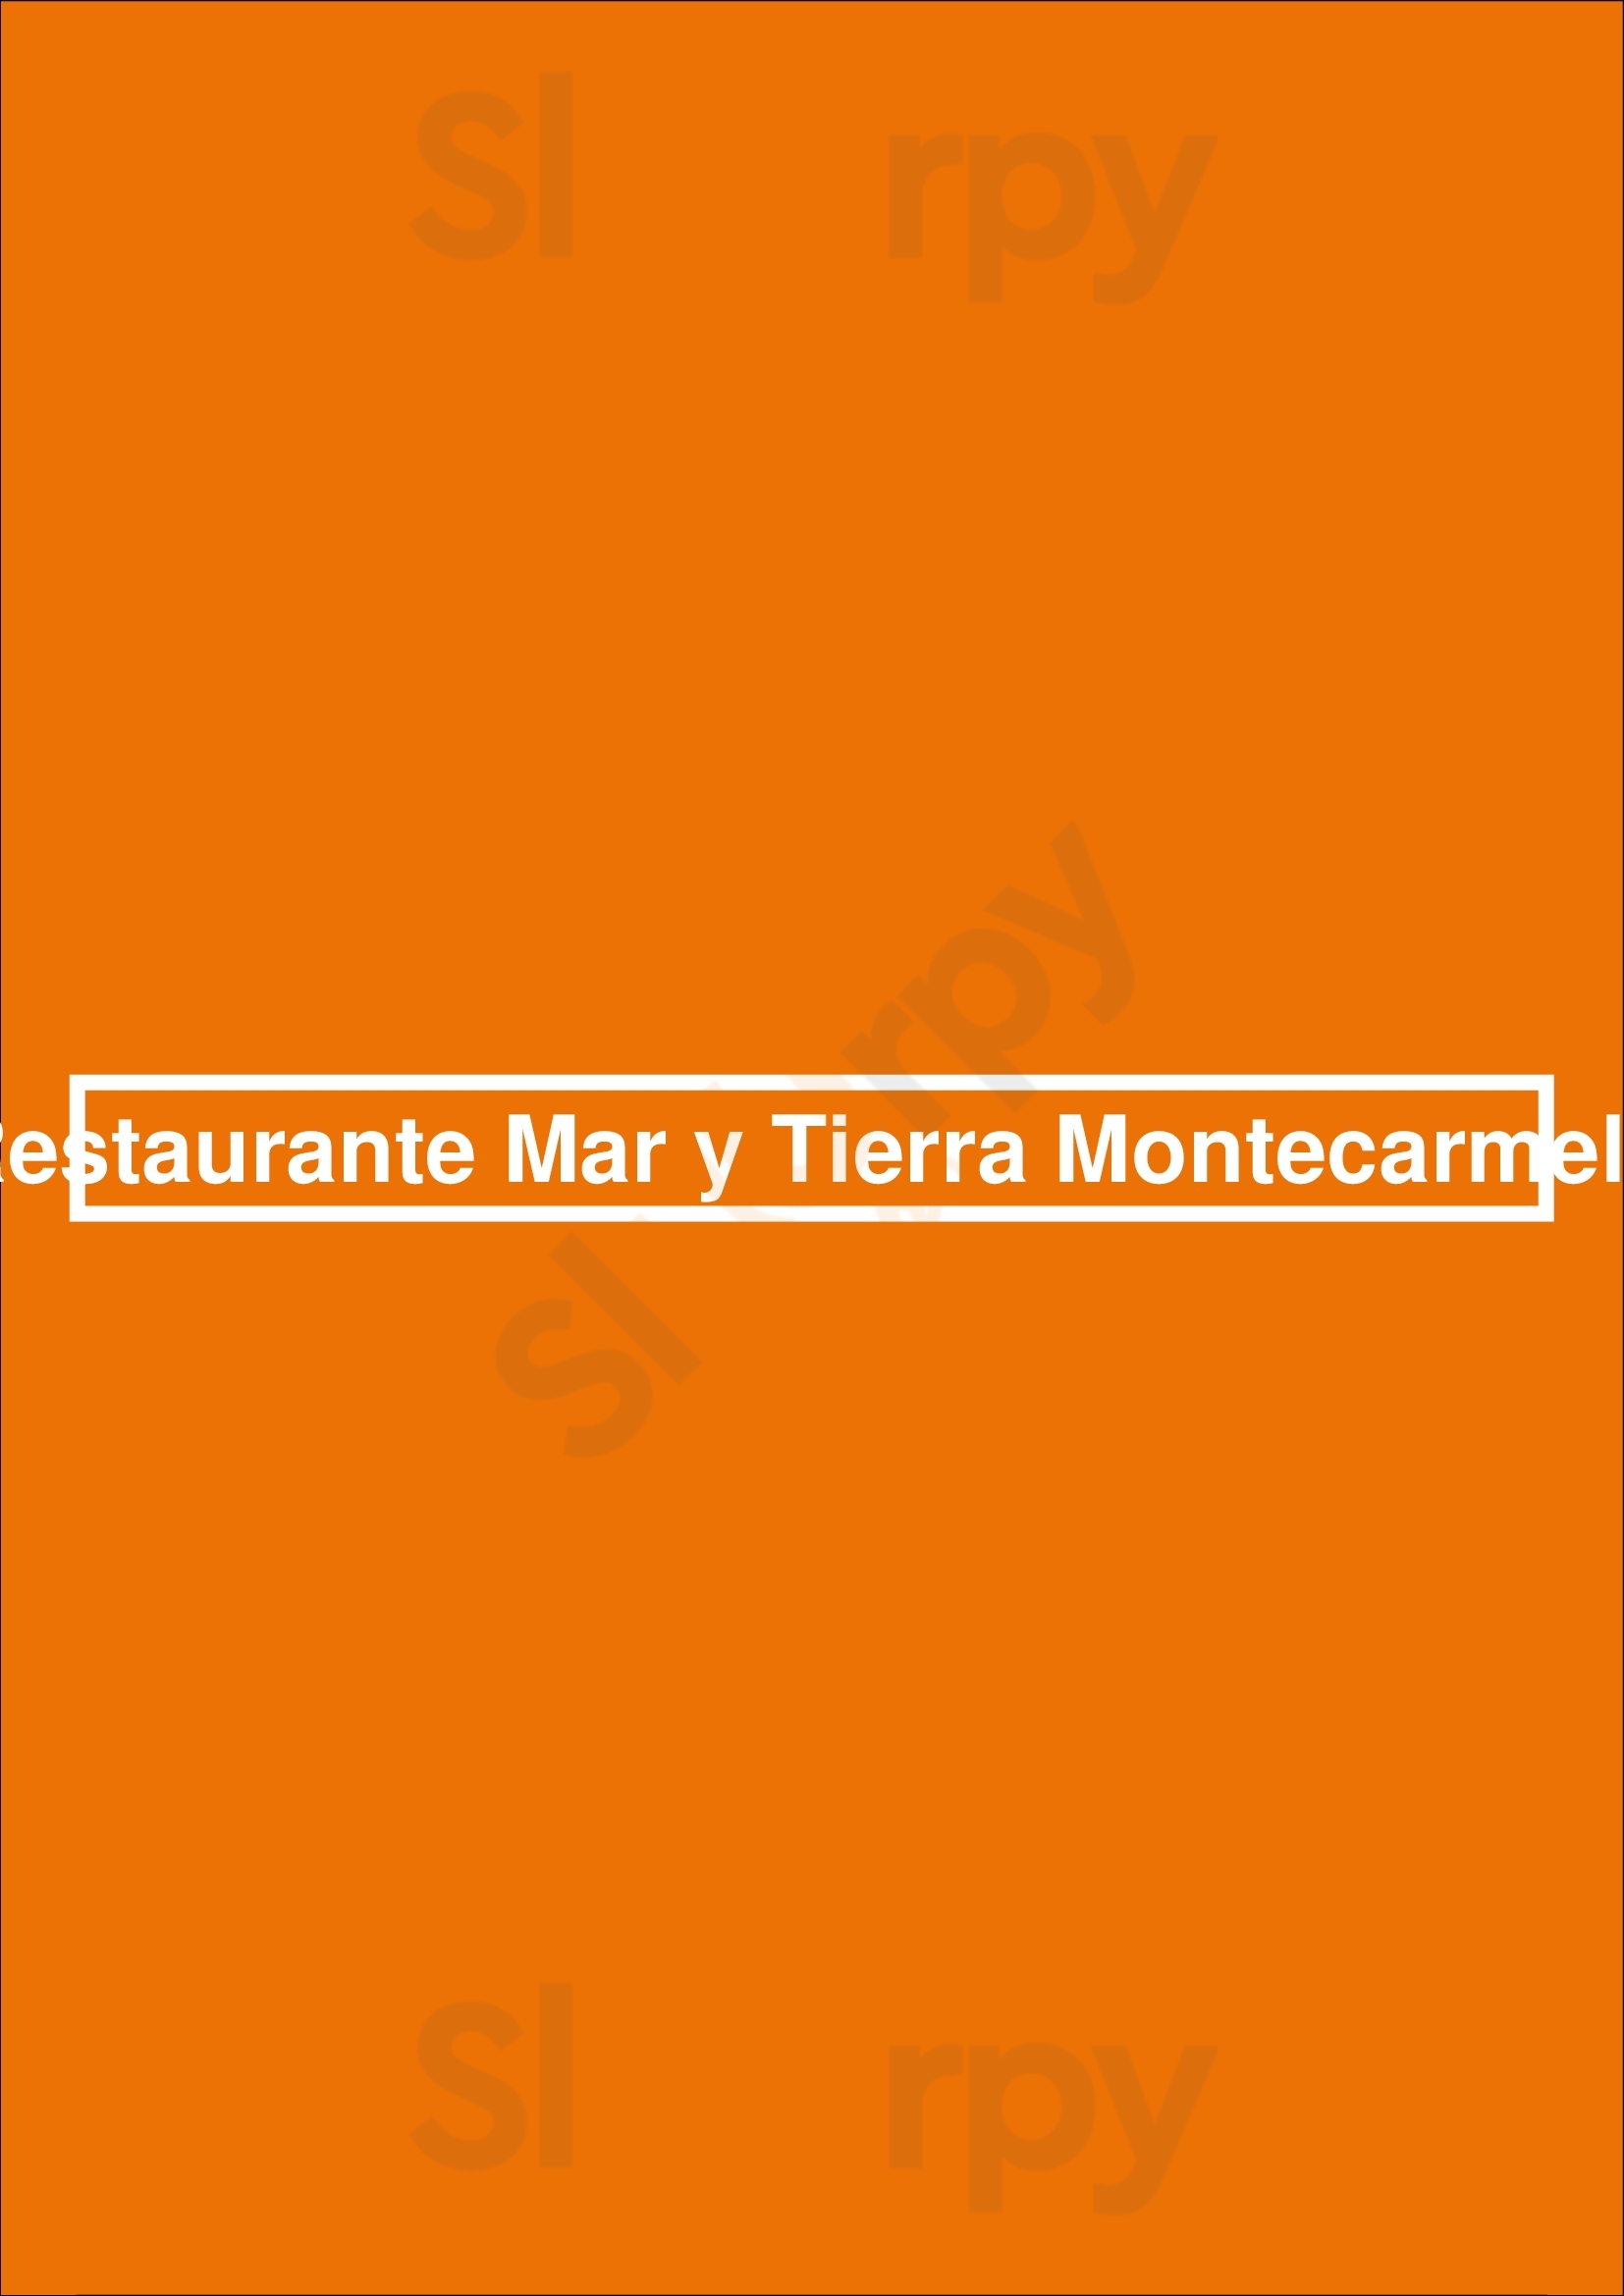 Mar Y Tierra Montecarmelo Madrid Menu - 1